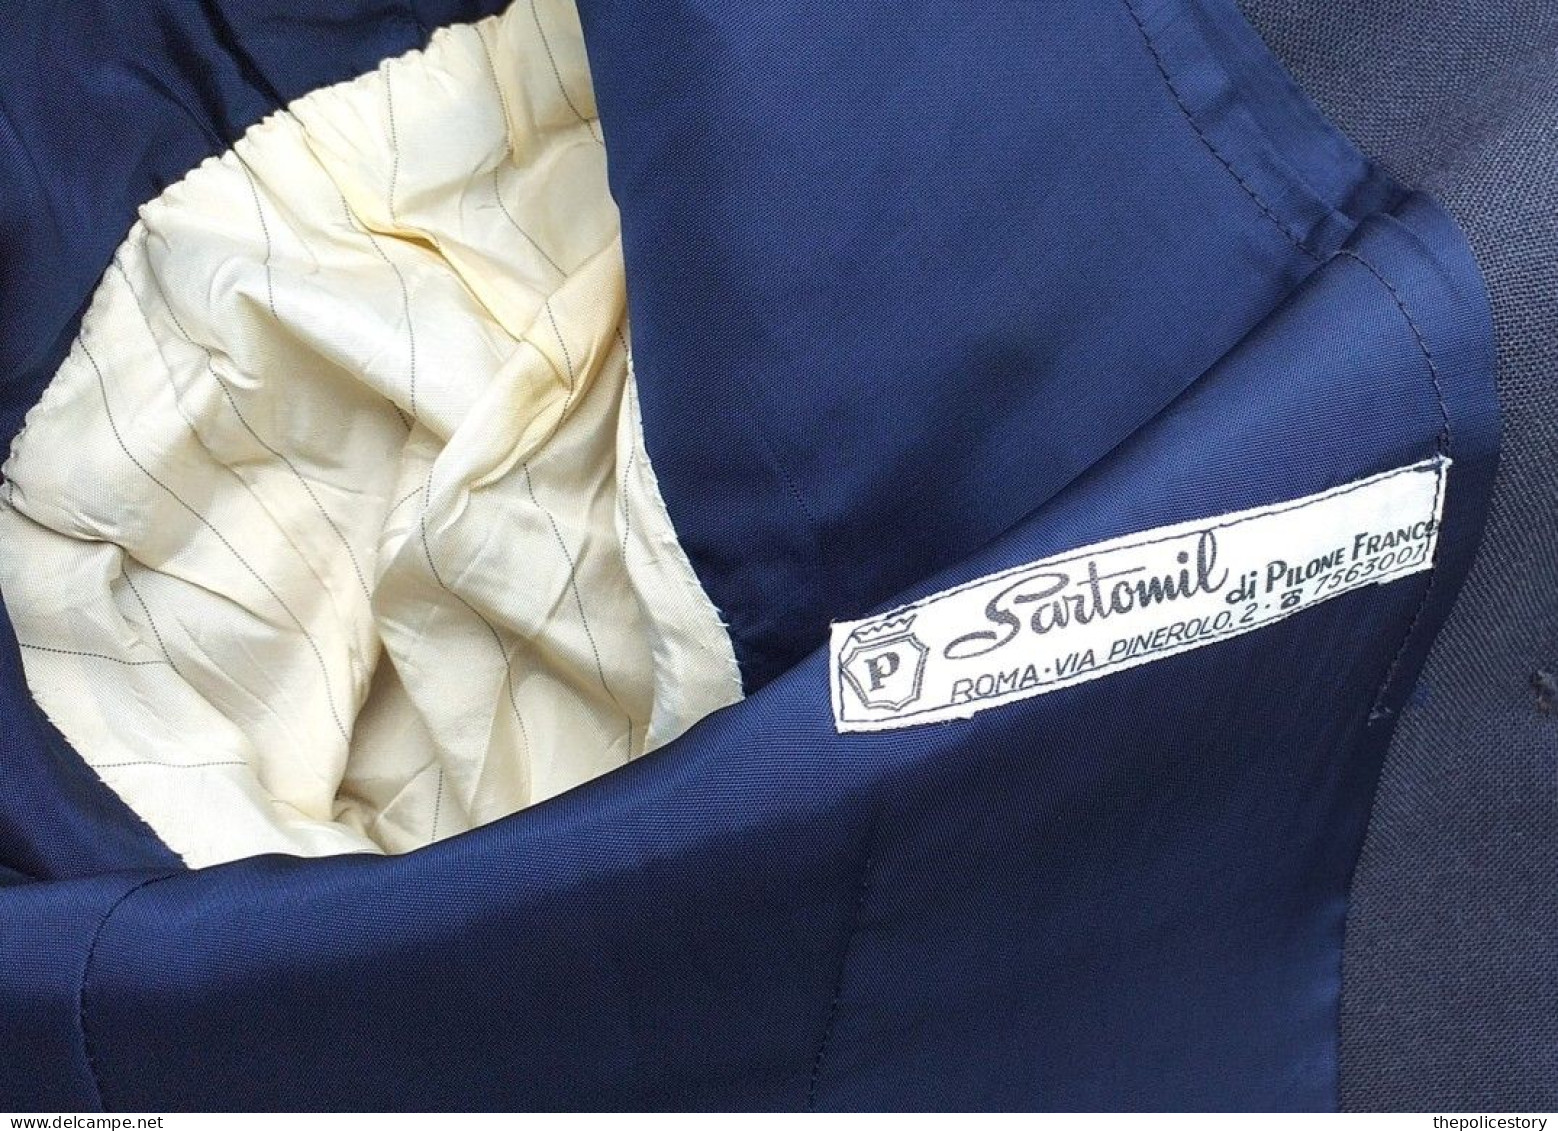 Giacca pantaloni camicia cravatta Ufficiale Aeronautica Militare anni '60